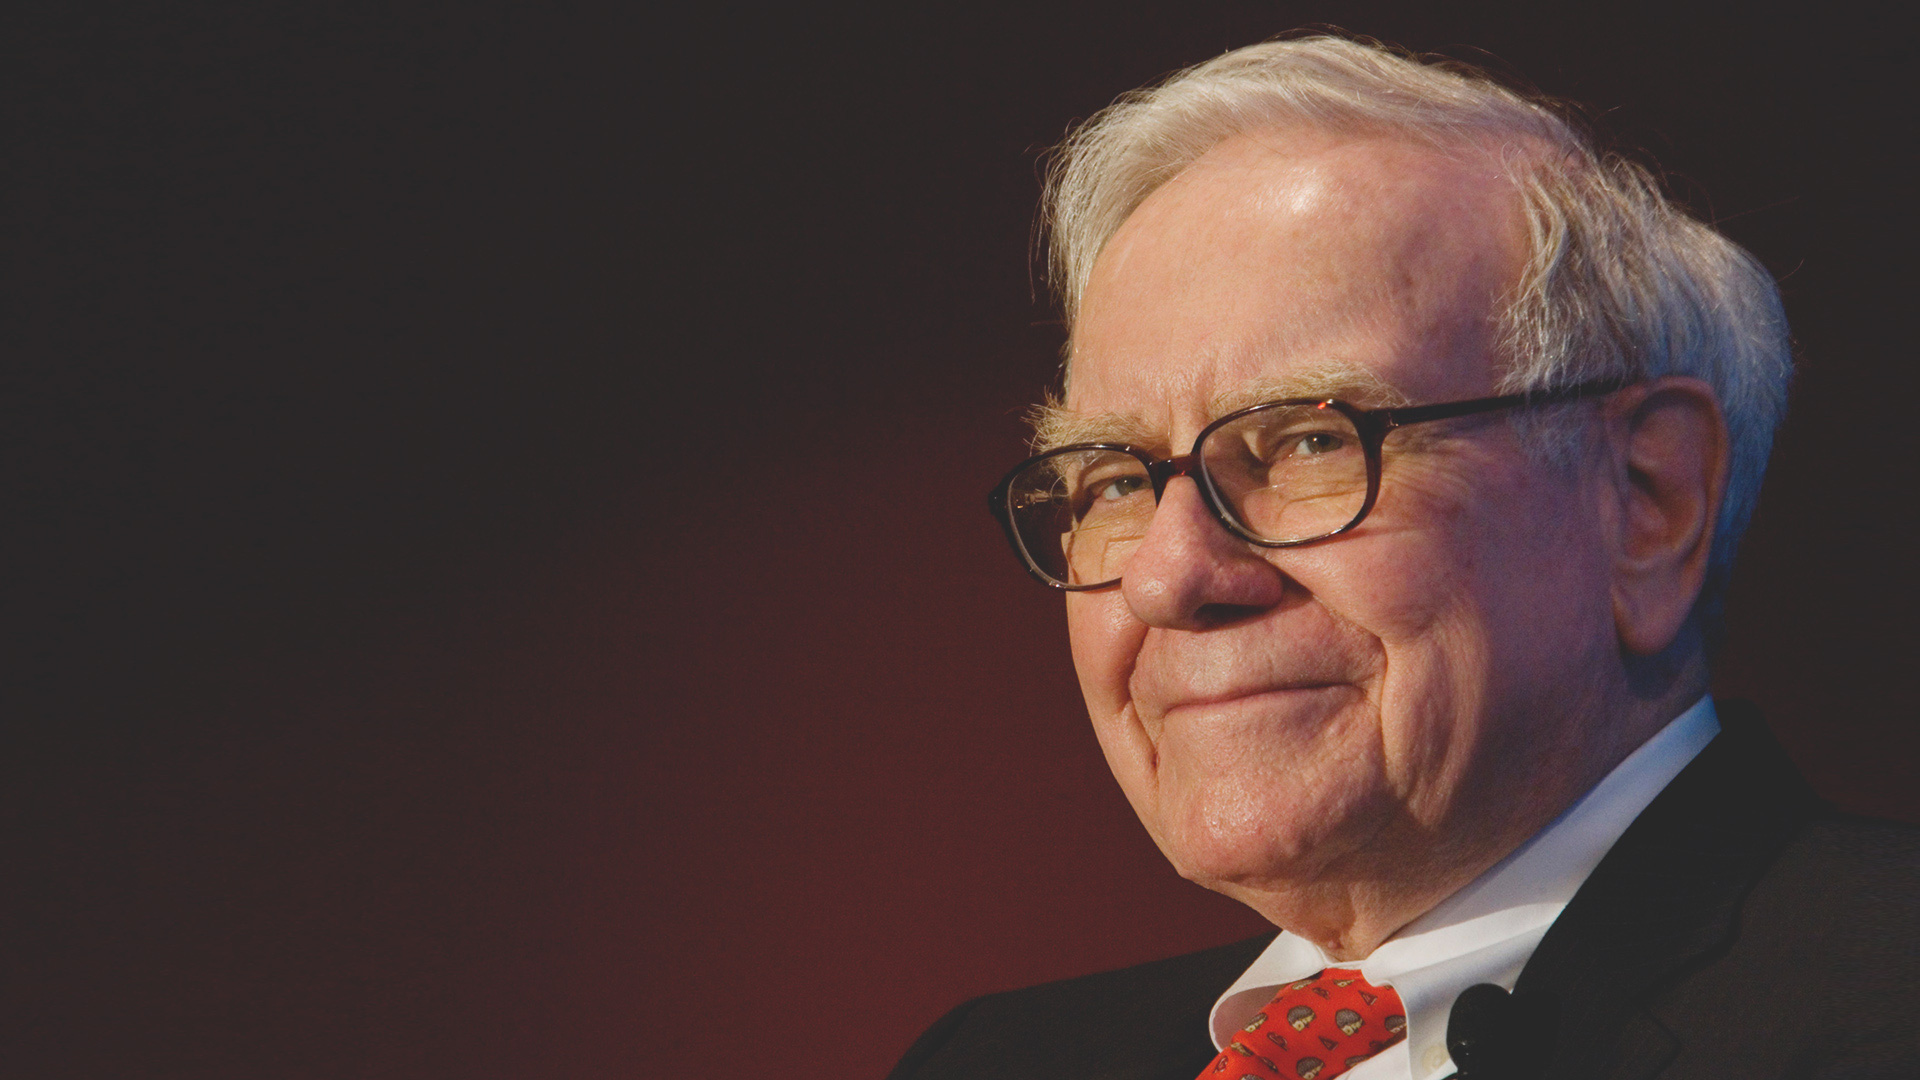 Muốn mua nhà, tỉ phú đầu tư 'huyền thoại' Warren Buffett khuyên gì?